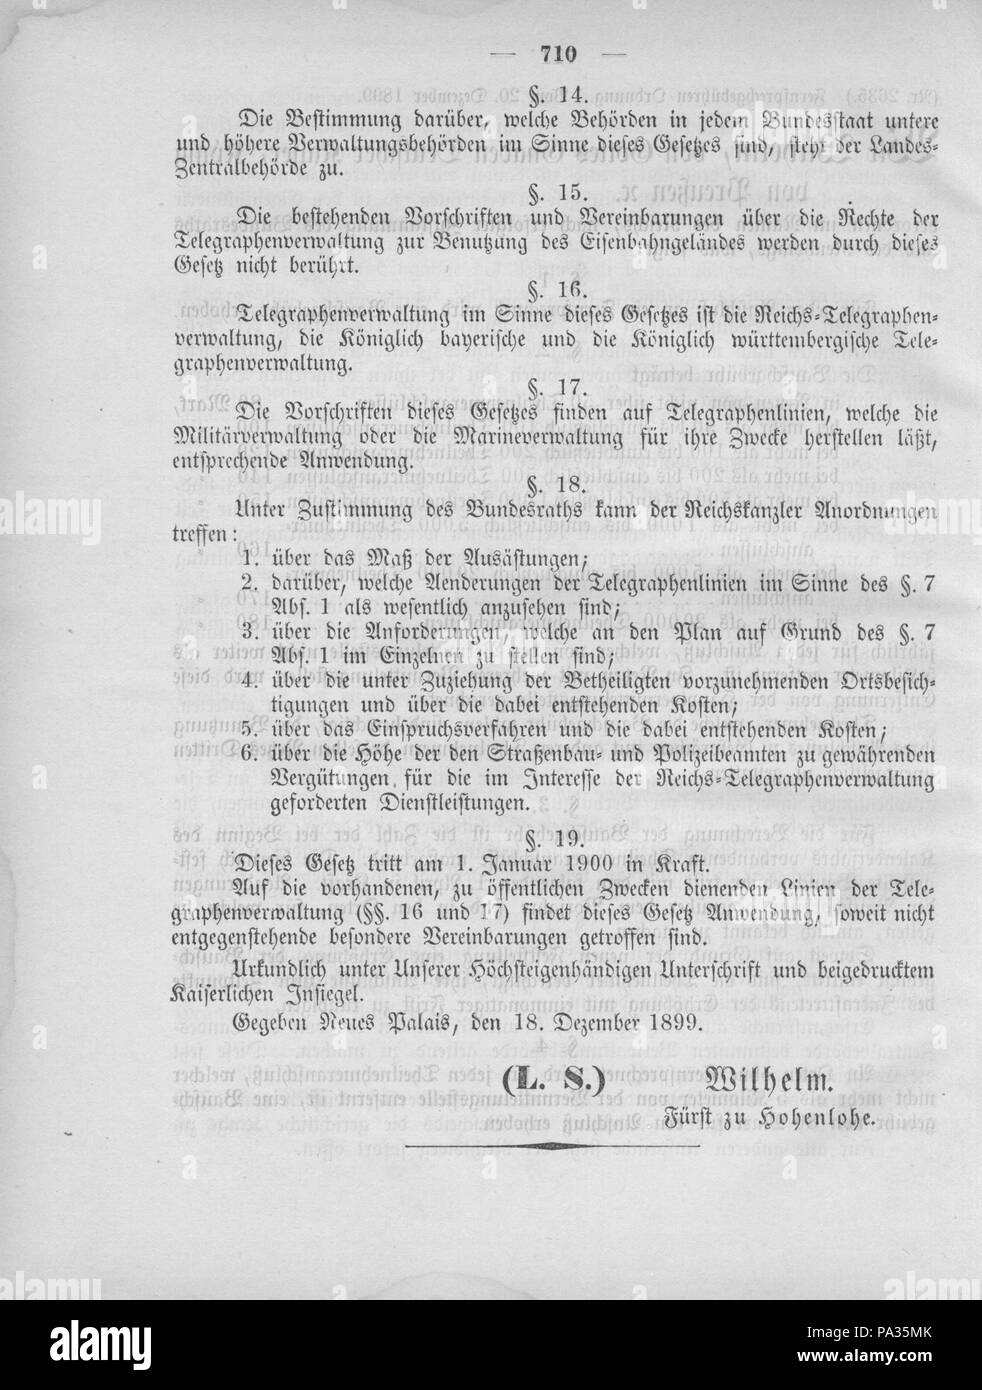 397 Deutsches Reichsgesetzblatt 1899 051 710 Stock Photo